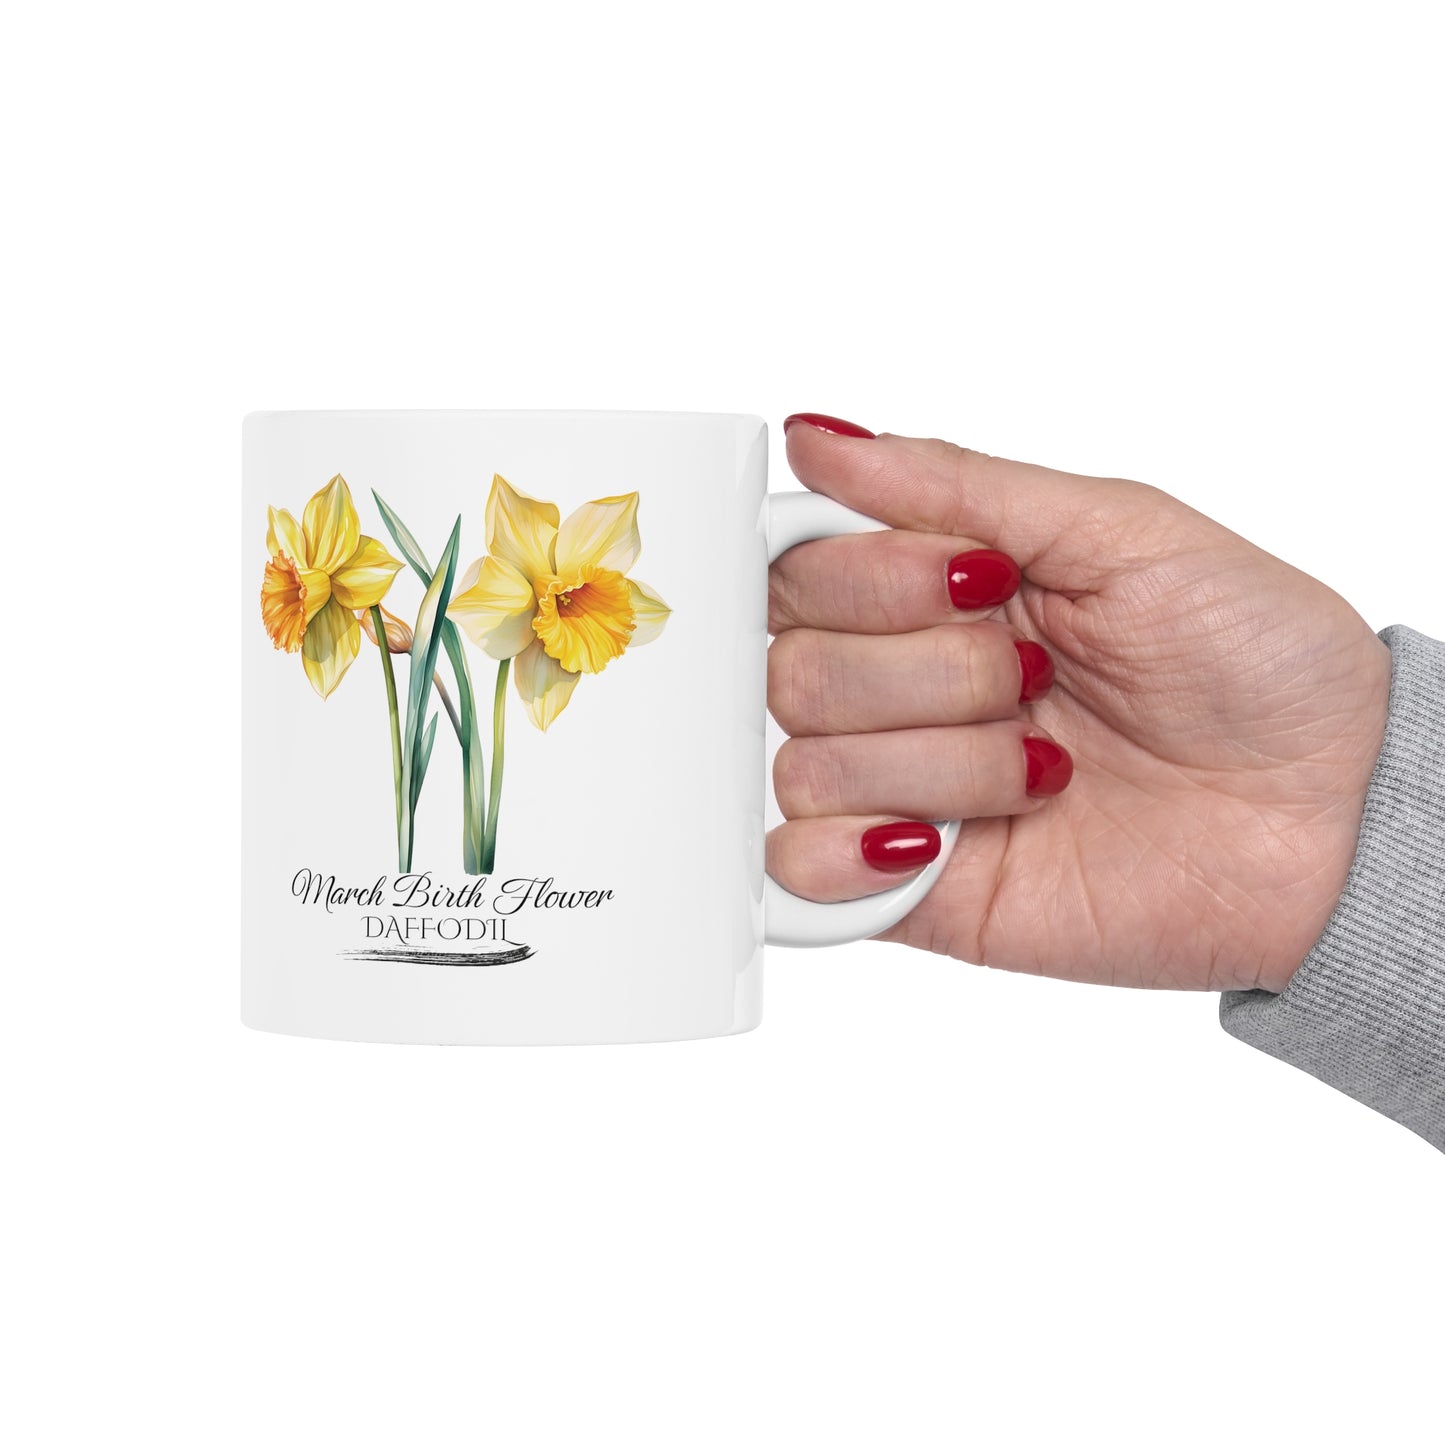 March Birth Flower (Daffodil): Ceramic Mug 11oz